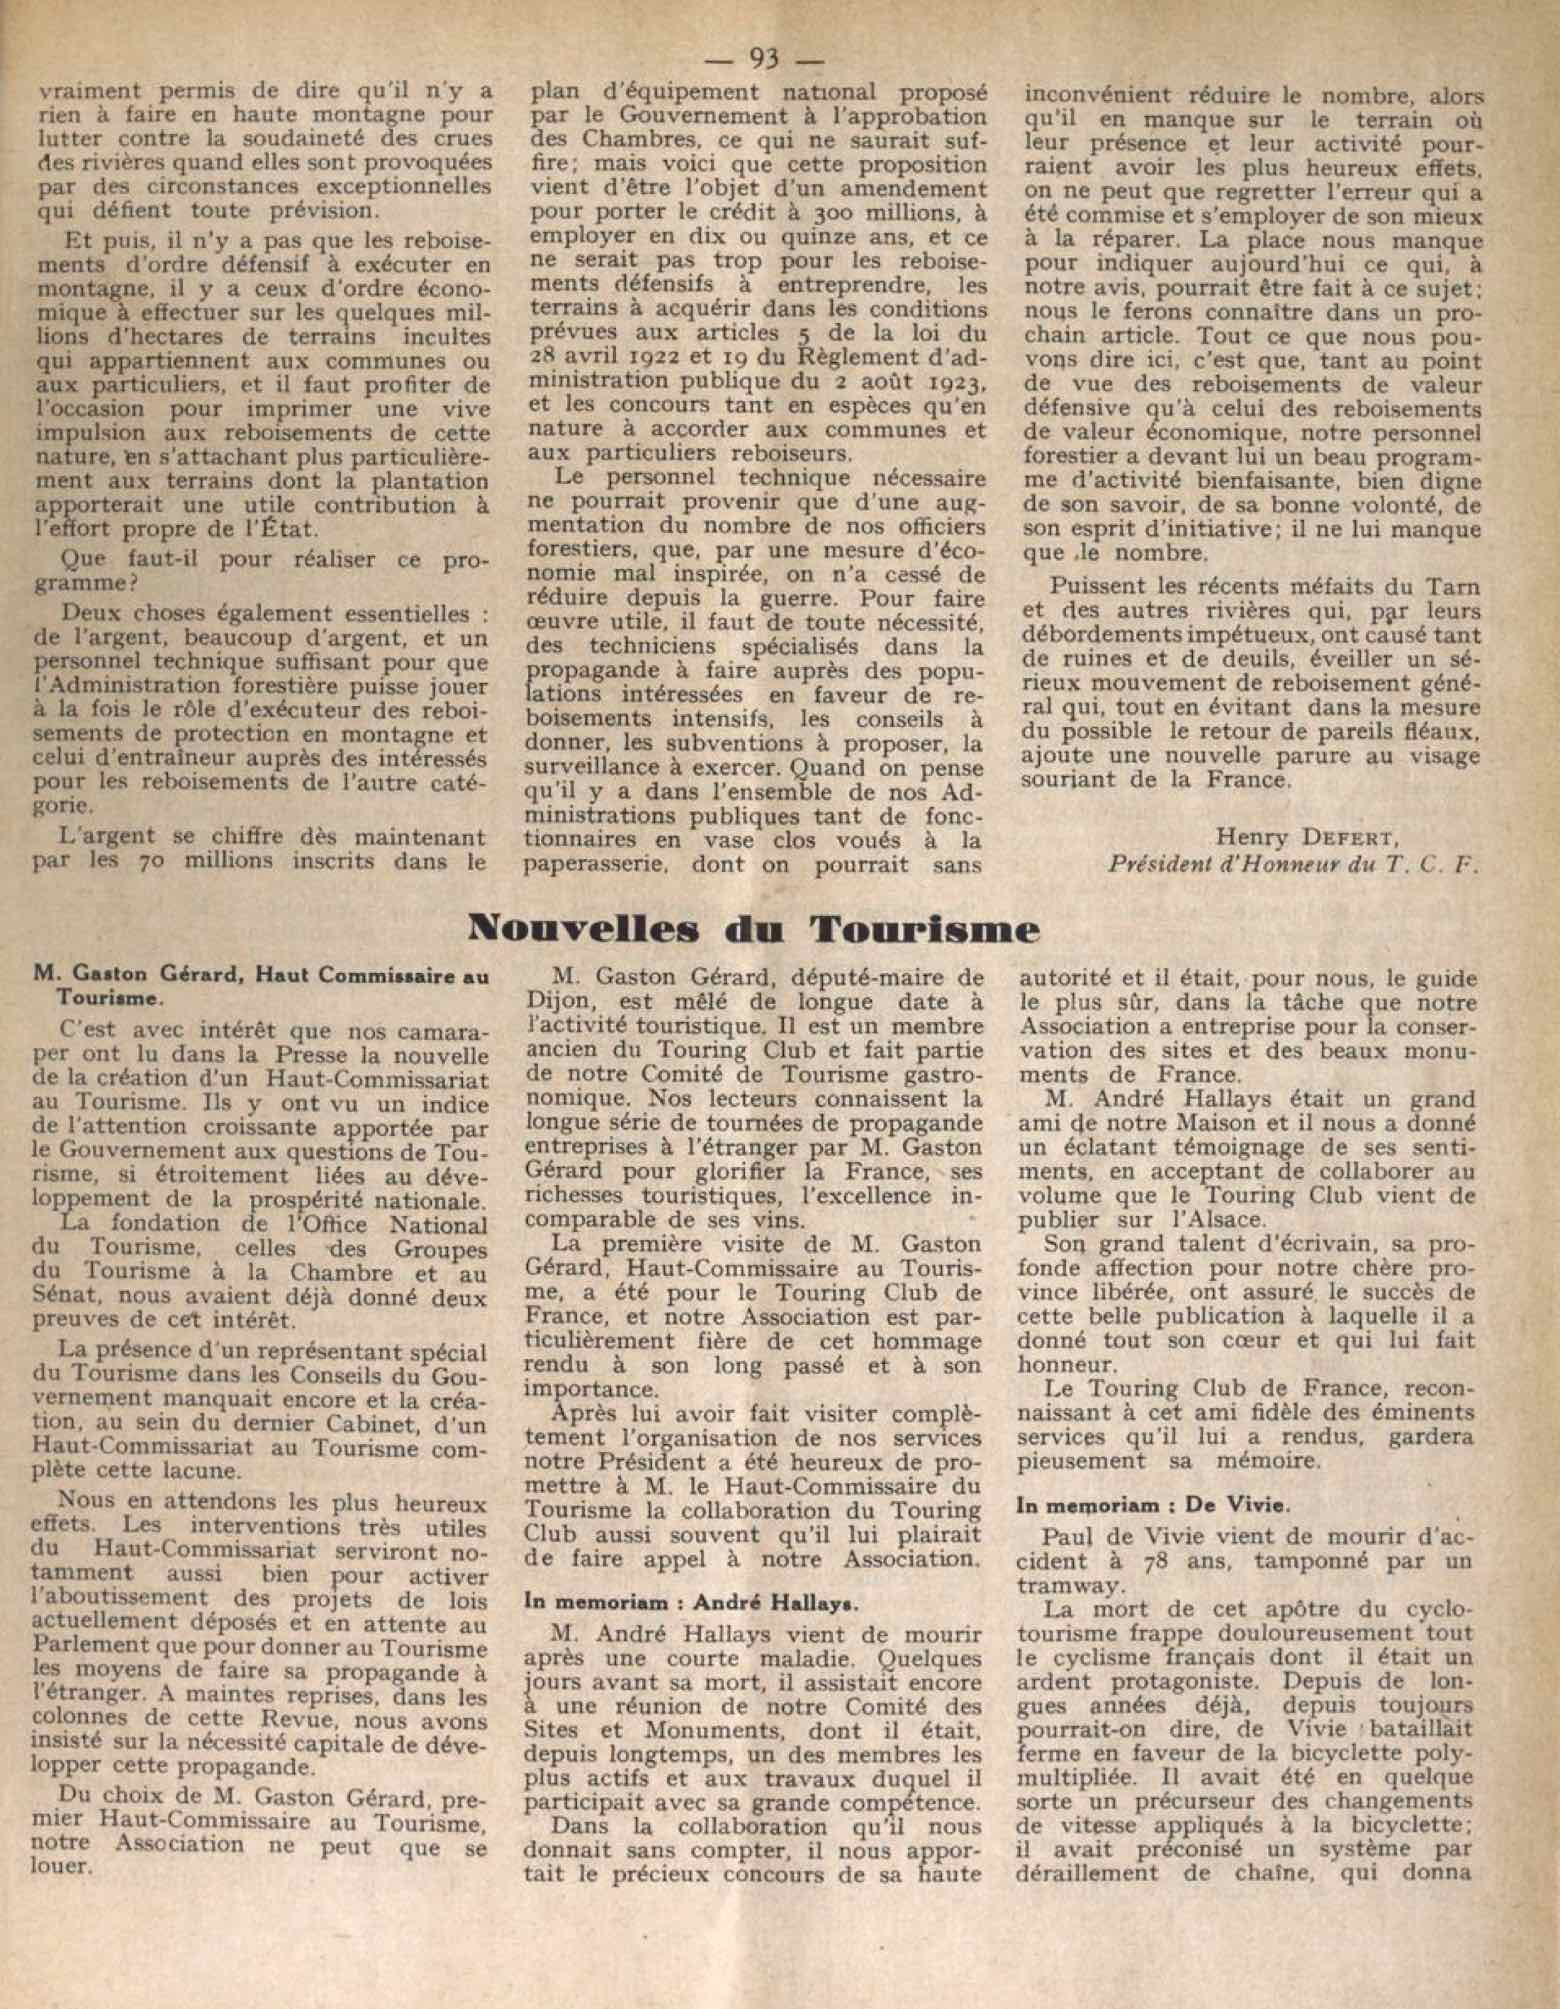 T.C.F. Revue Mensuelle April 1930 - Nouvelles du Tourisme scan 1 main image